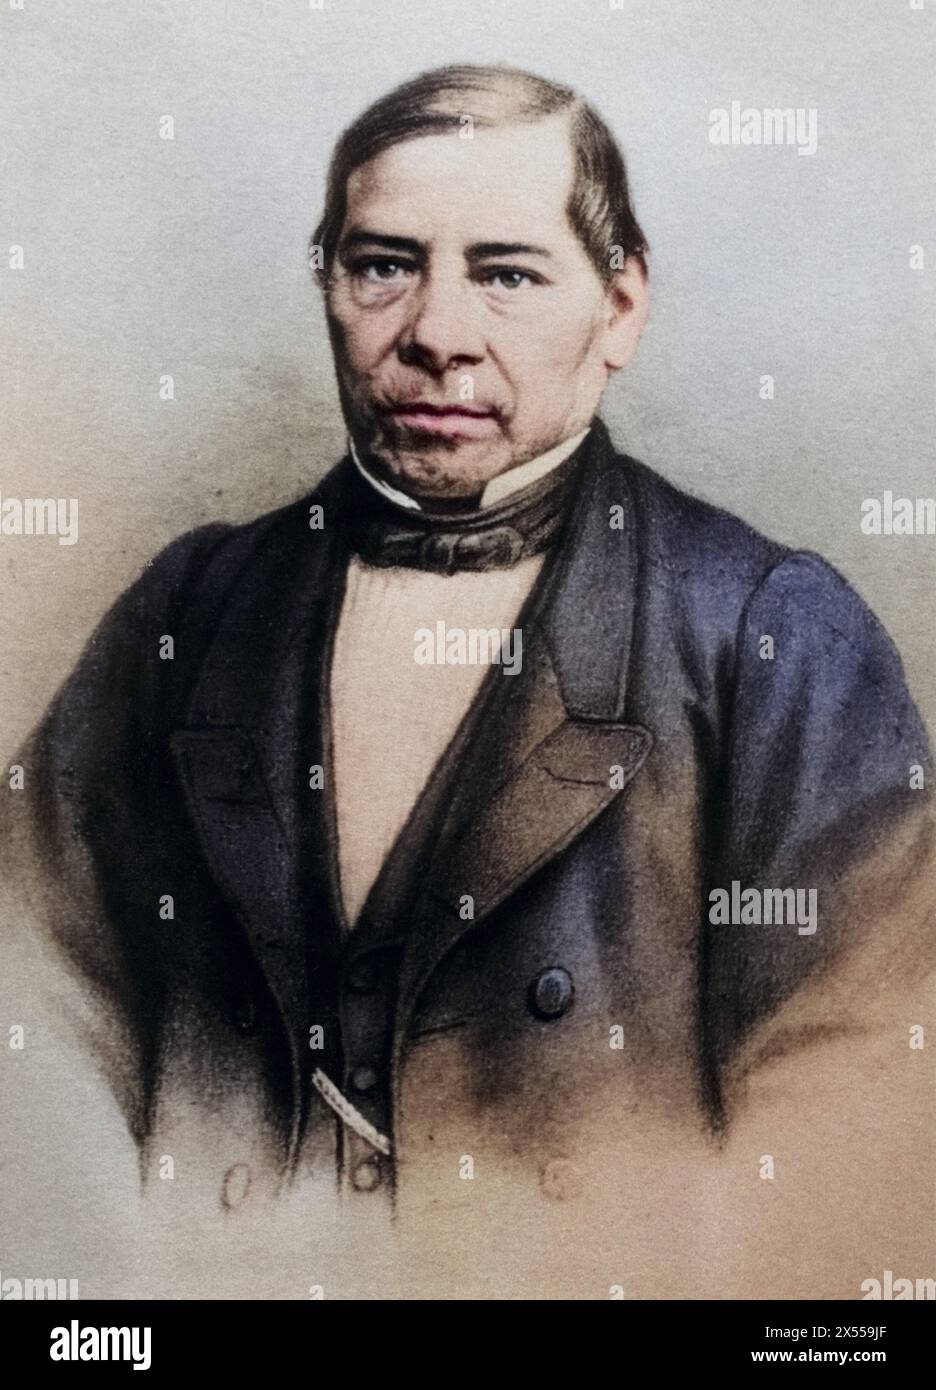 Juarez Garcia, Benito, 21.3.1806 - 18.7,1872, homme politique mexicain, Président du Mexique 1861 - 1872, ADDITIONAL-RIGHTS-LEARANCE-INFO-NOT-AVAILABLE Banque D'Images